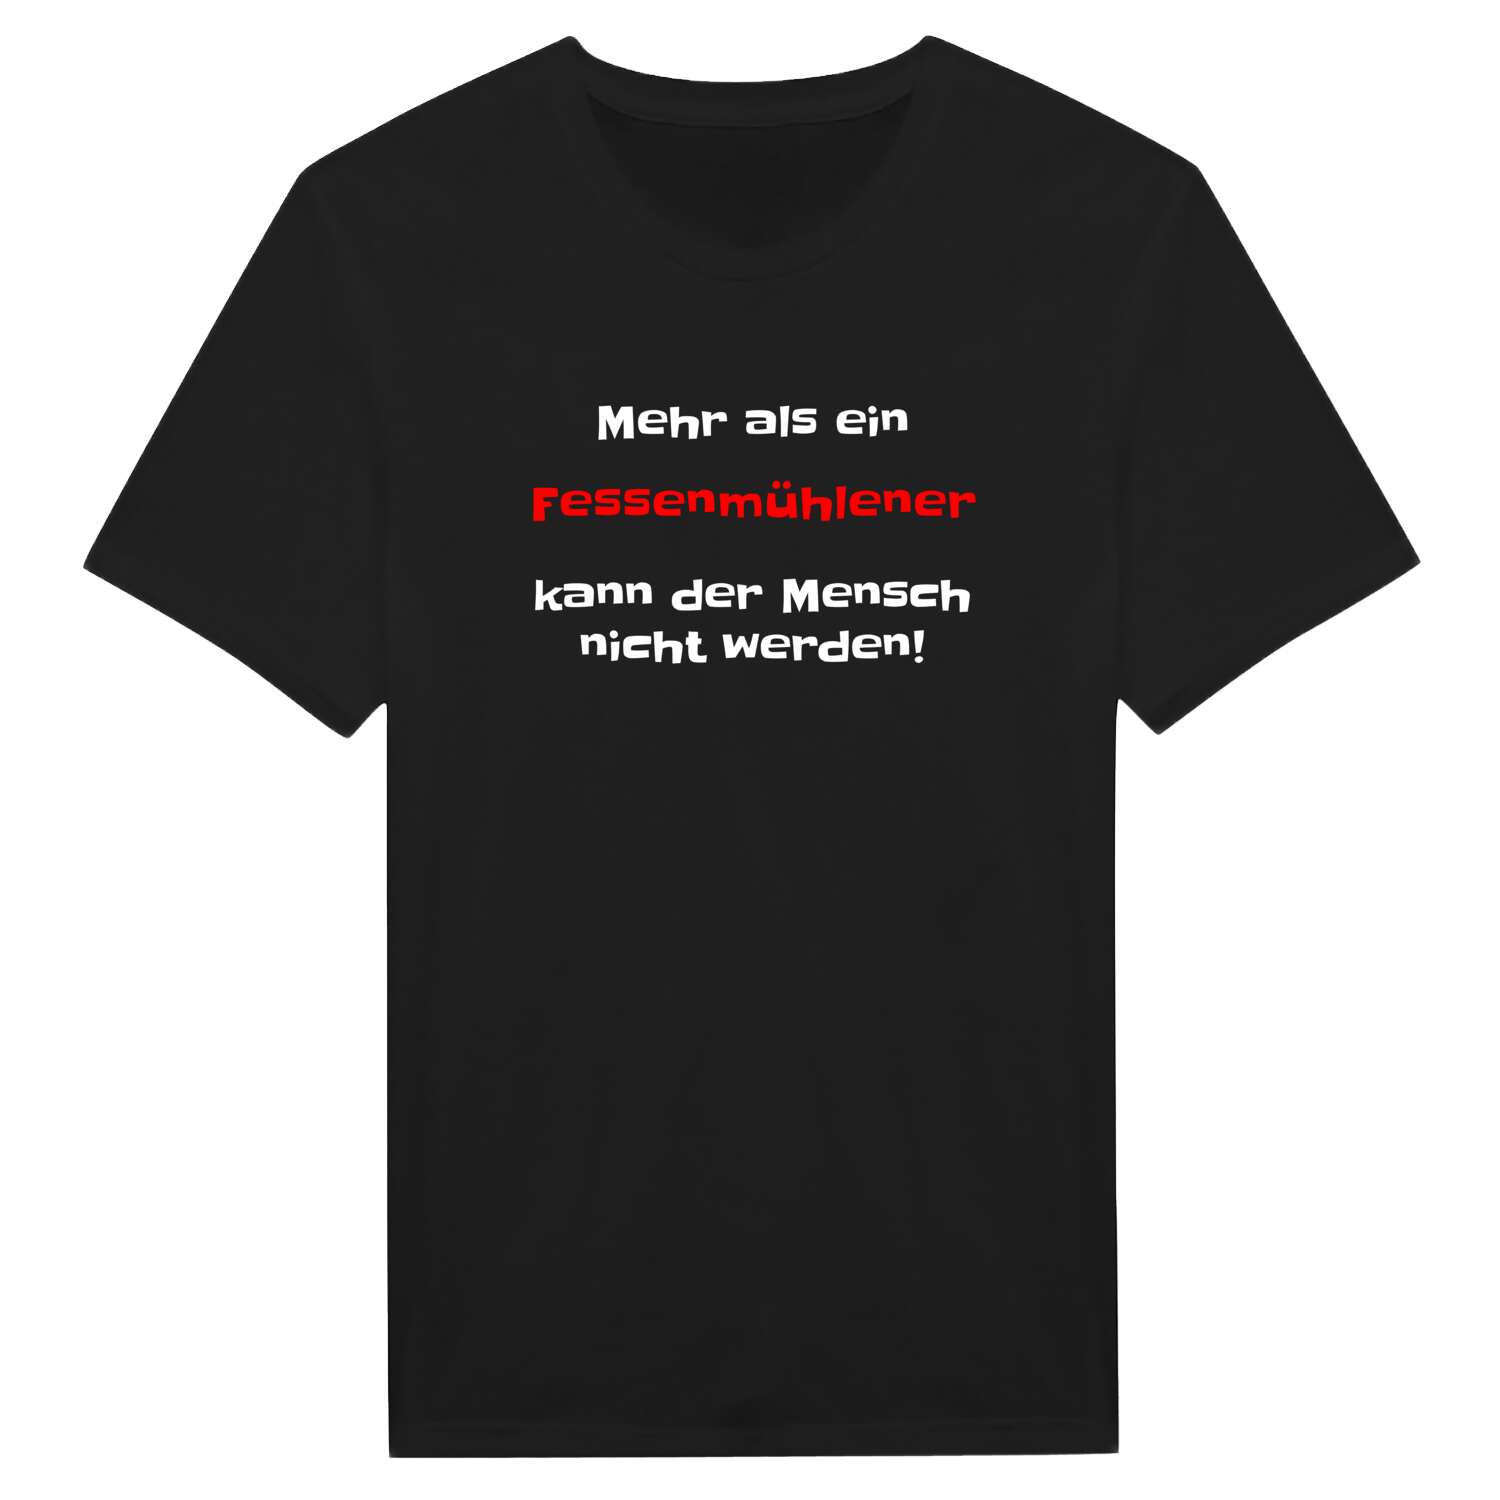 Fessenmühle T-Shirt »Mehr als ein«